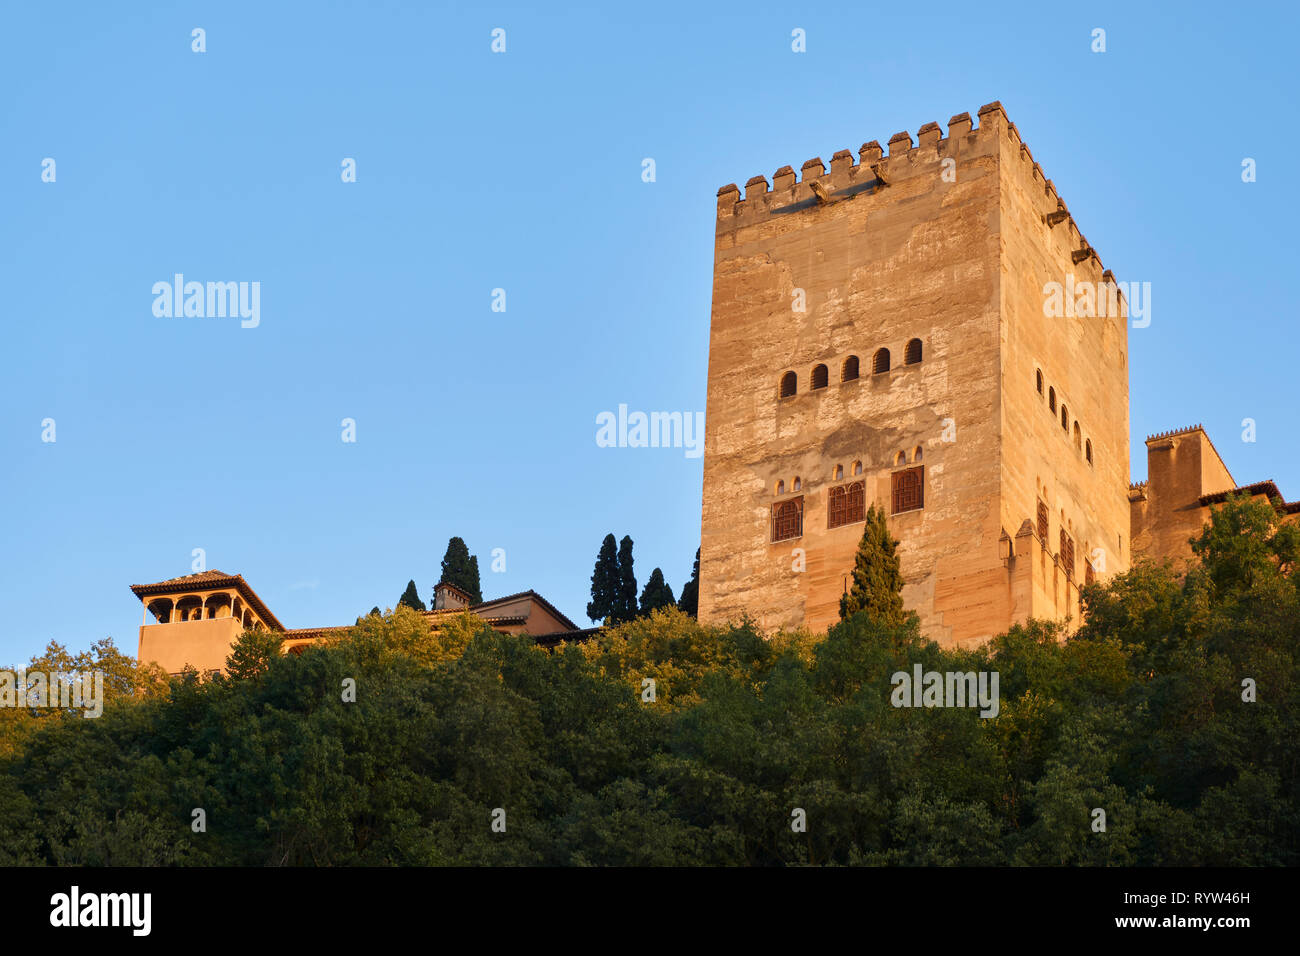 Vue extérieure de la Tour de Comares dans l'Alhambra à Grenade. Espagne Banque D'Images